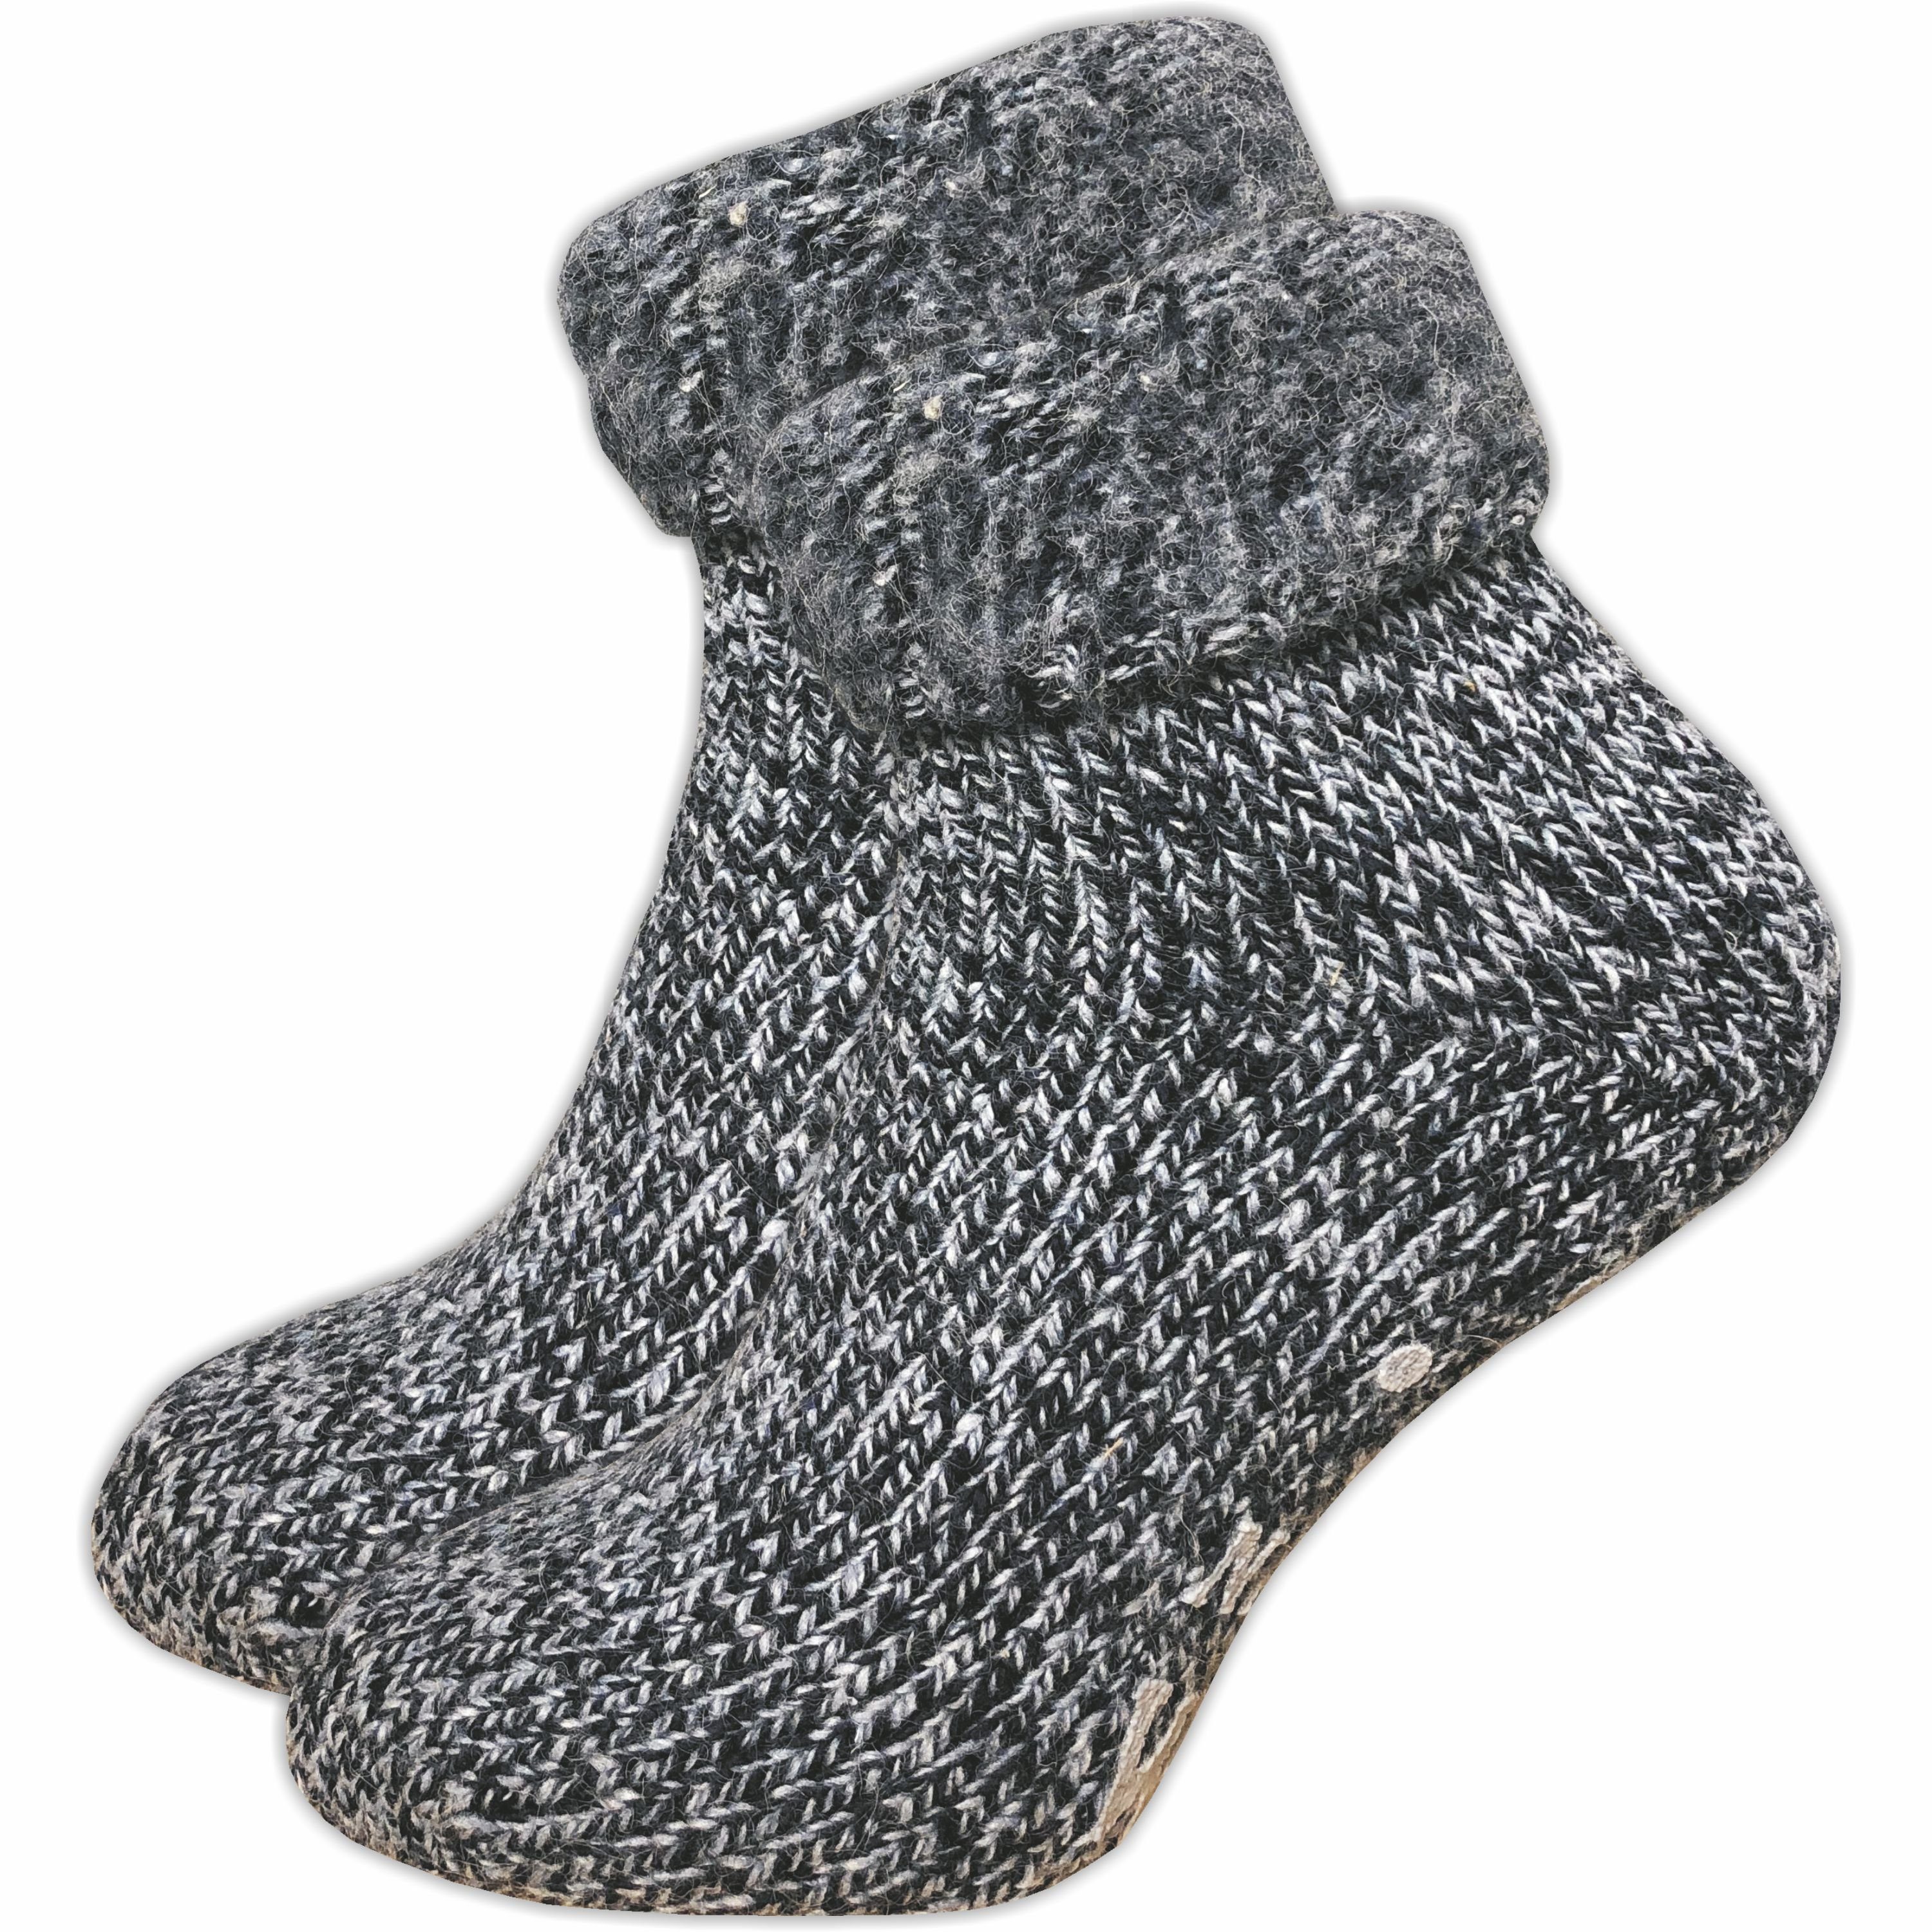 GAWILO ABS-Socken für Damen - Rutschfeste Hausschuhsocken - extra weich & mit Noppen (1 Paar) kuschelige & warme Wolle hilft gegen kalte Füße blau